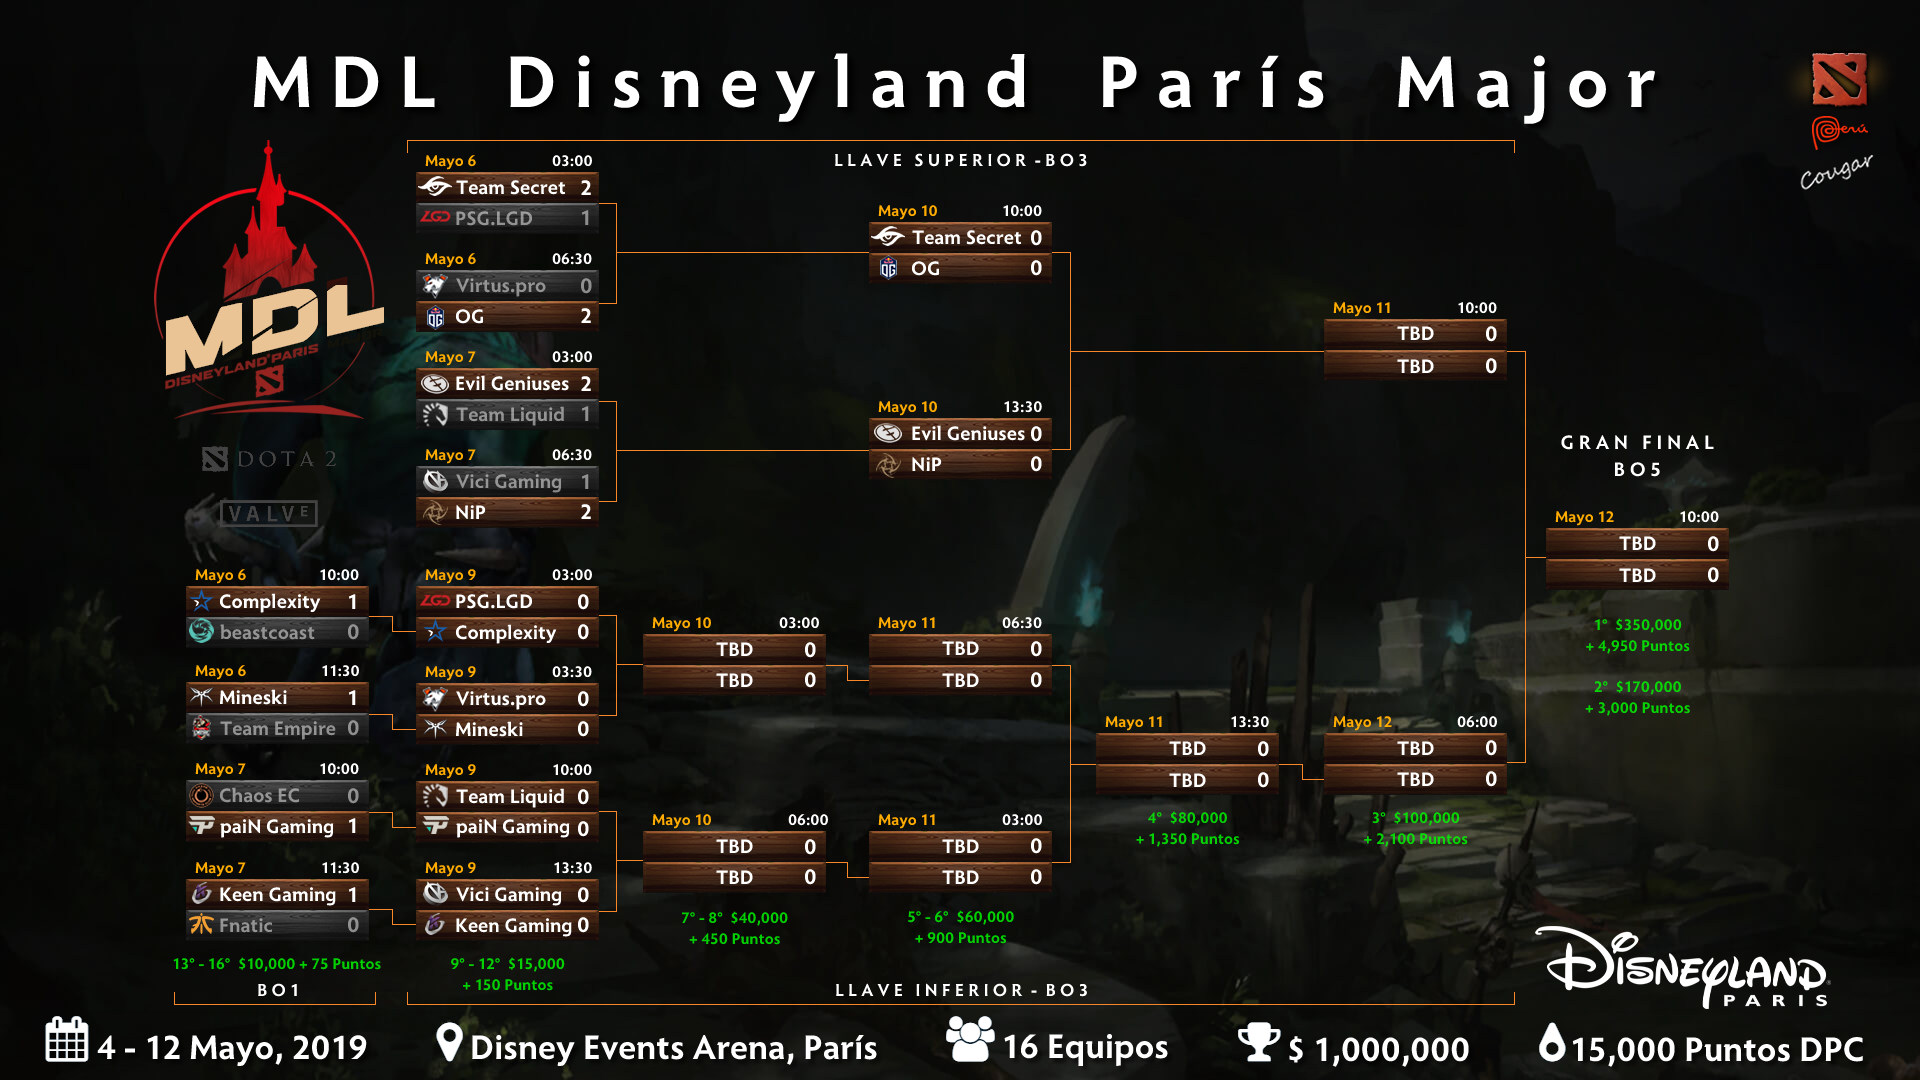 MDL Disneyland Paris Major Group Stage